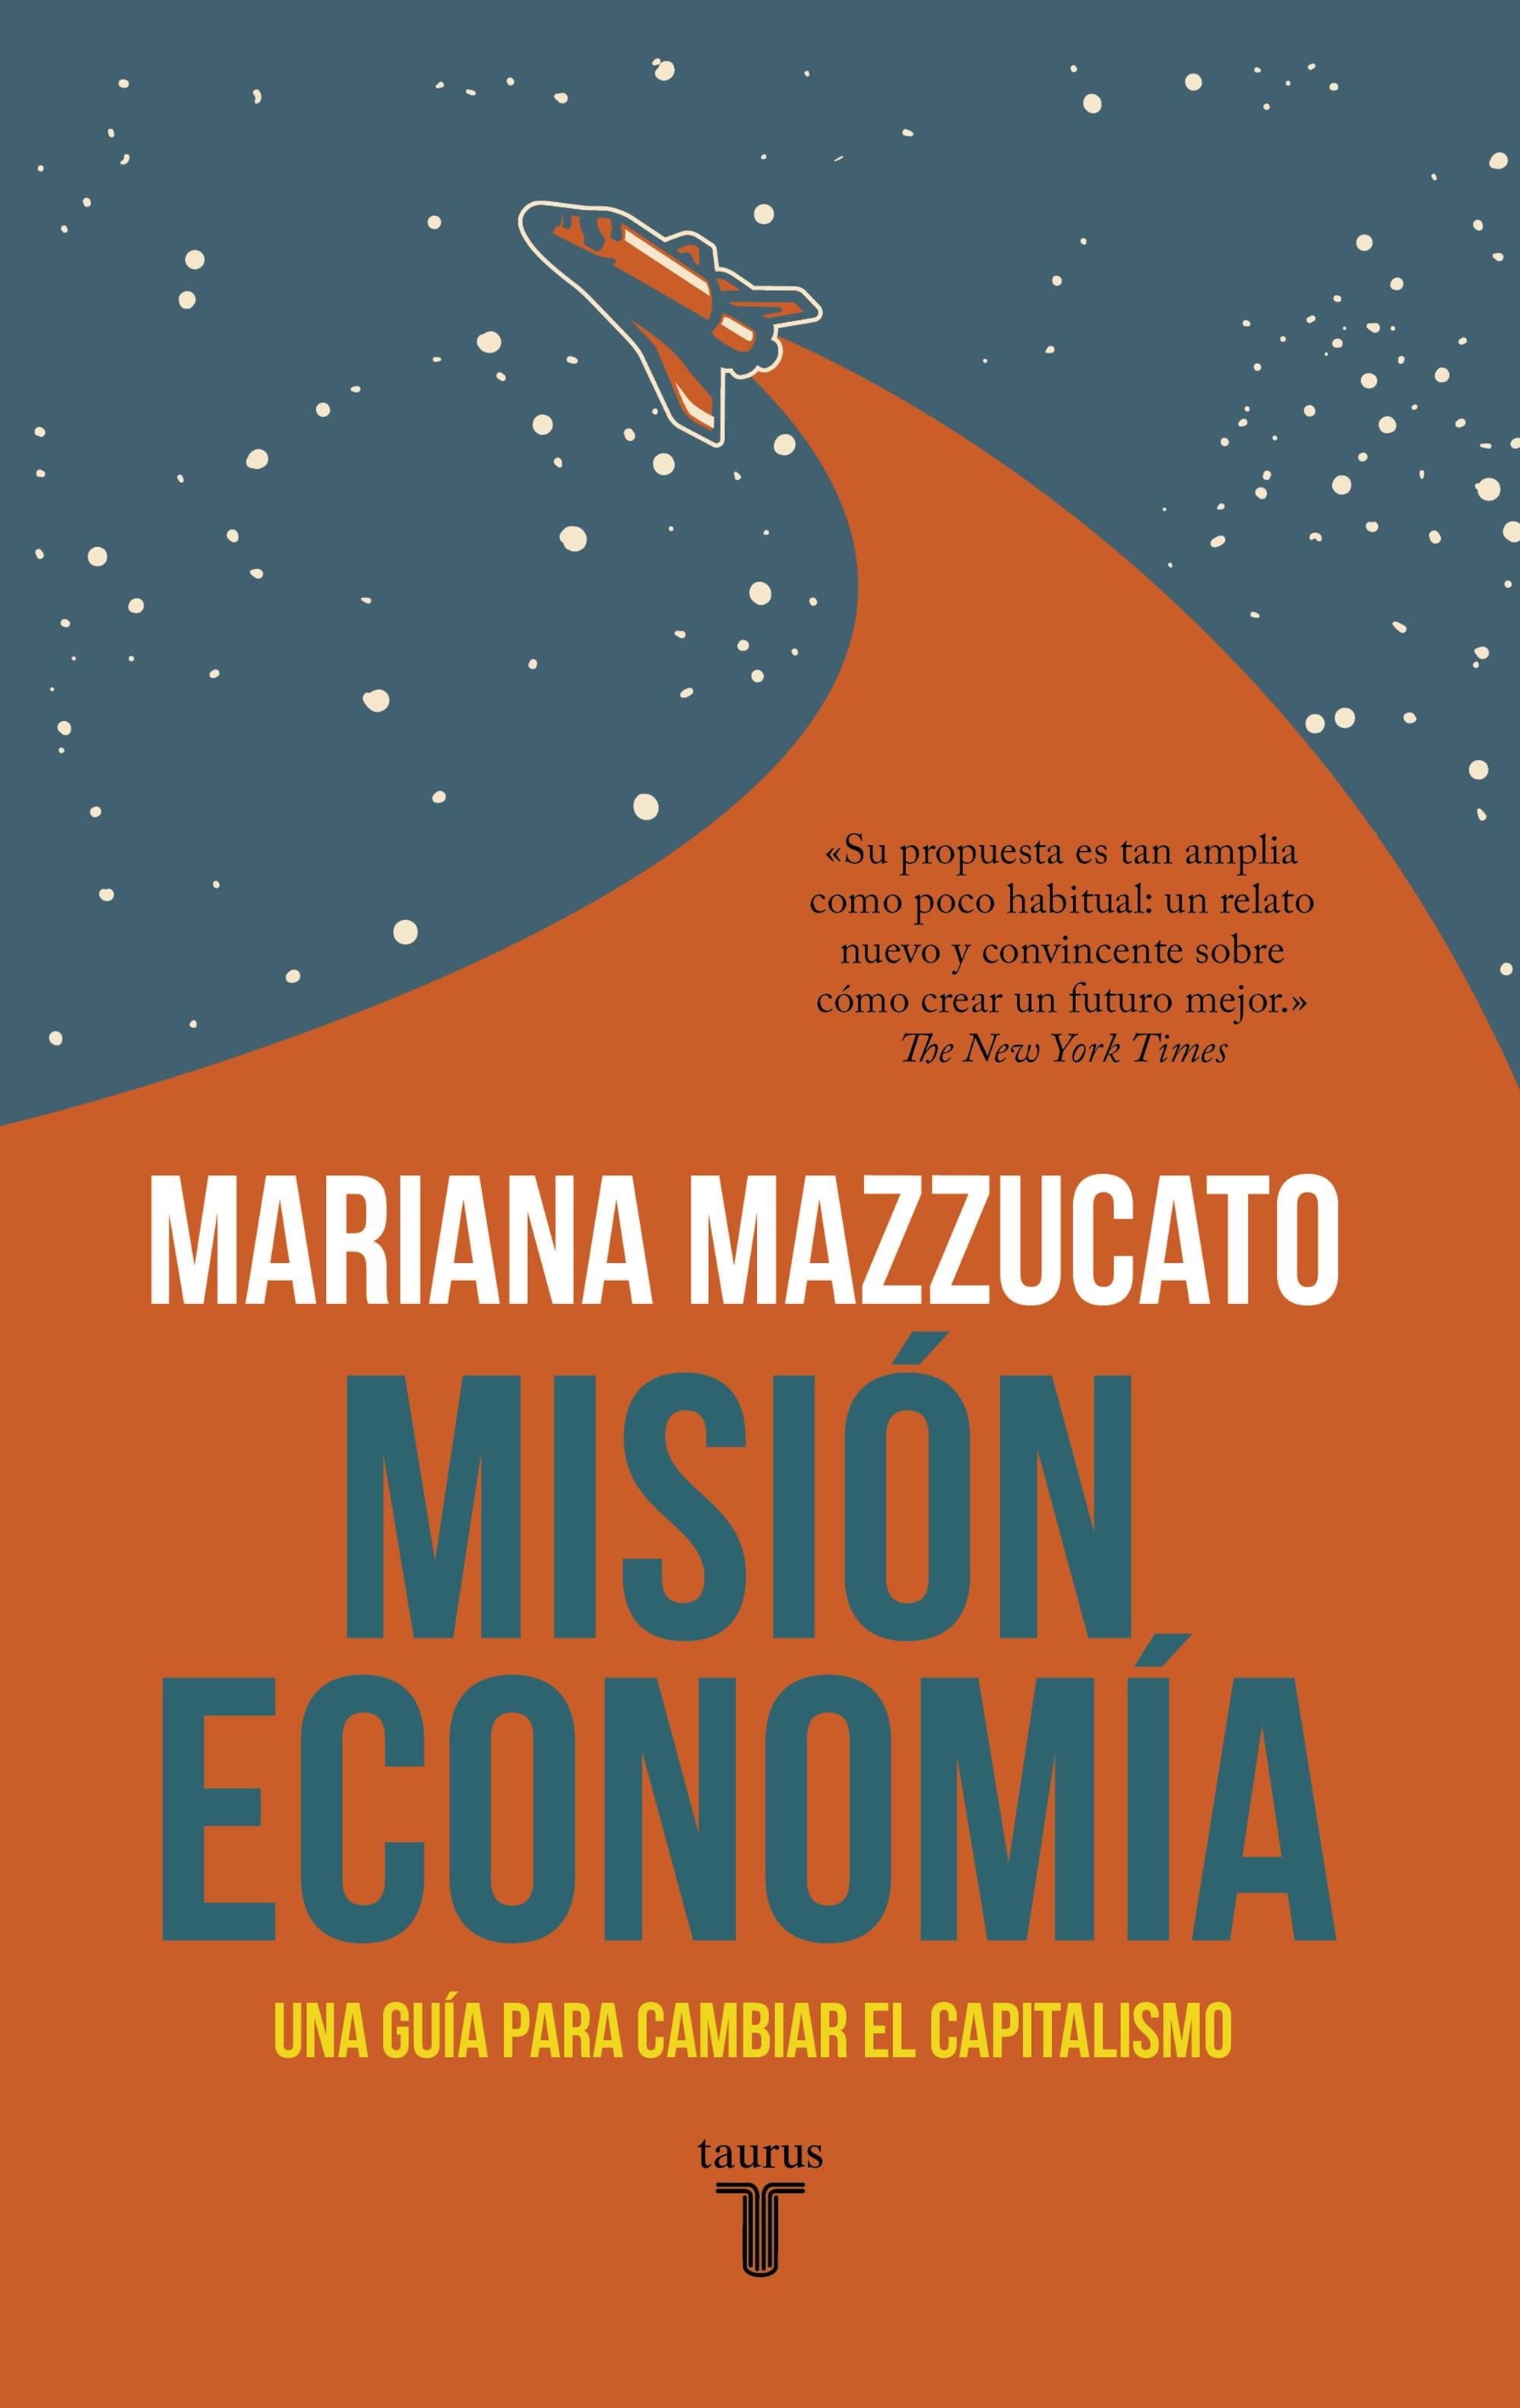 Misión economía "Una guía para cambiar el capitalismo". 